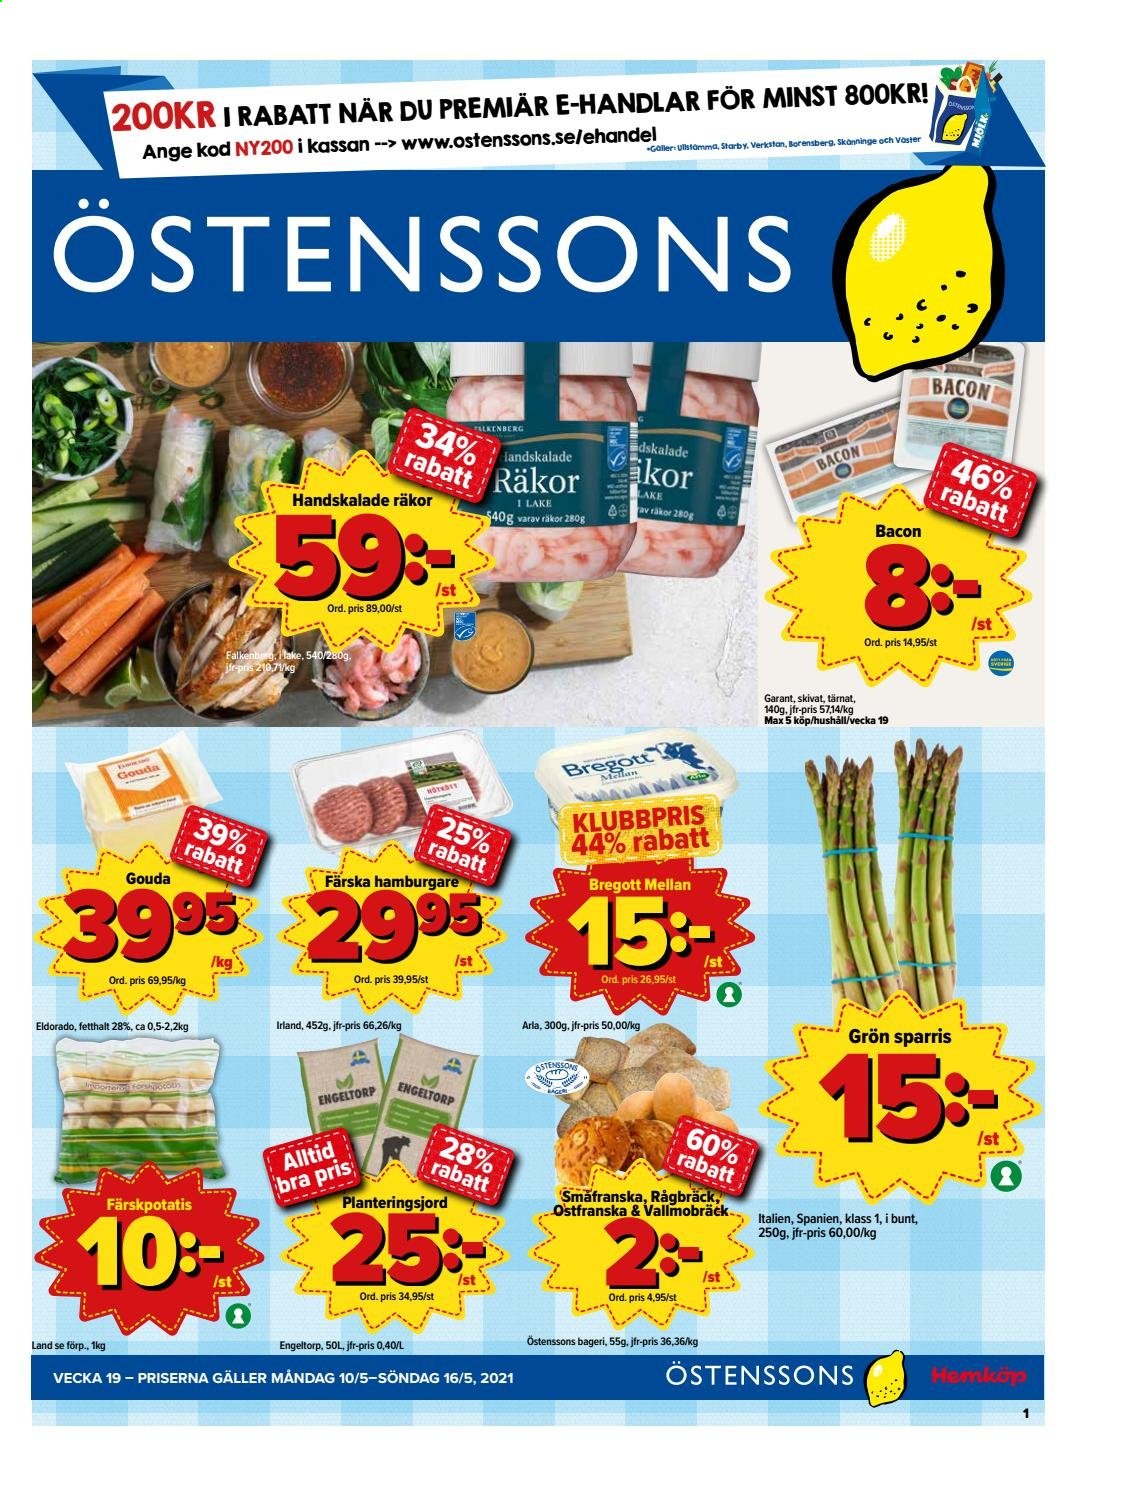 thumbnail - Östenssons reklamblad - 10/5 2021 - 16/5 2021 - varor från reklamblad - sparris, räkor, hamburgare, bacon, gouda, Arla, Bregott. Sida 1.